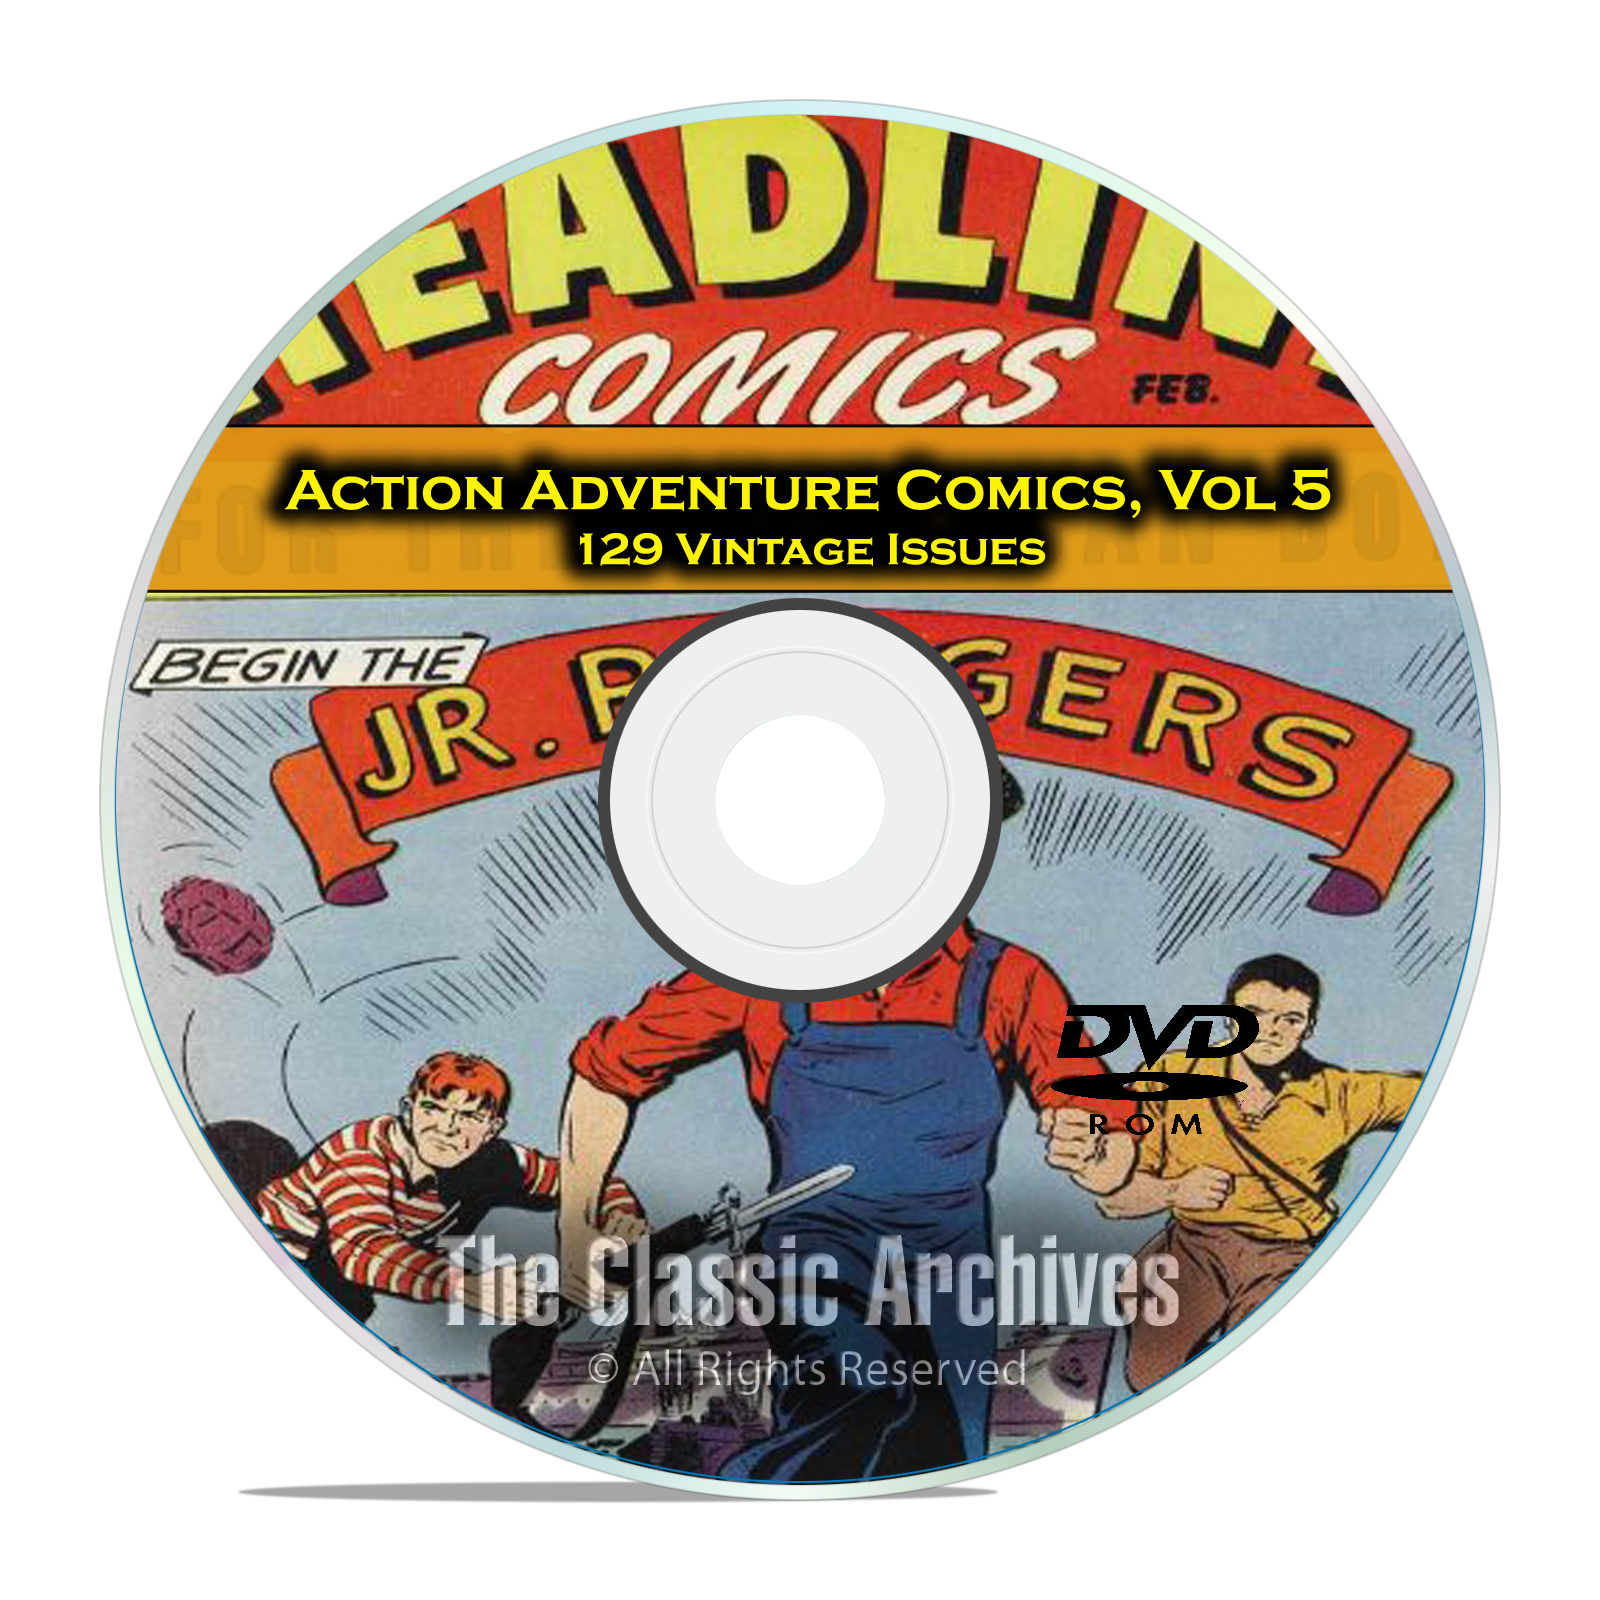 Action Adventure Comics, Vol 5, Headline, Treasure, Rocket, Golden Age DVD